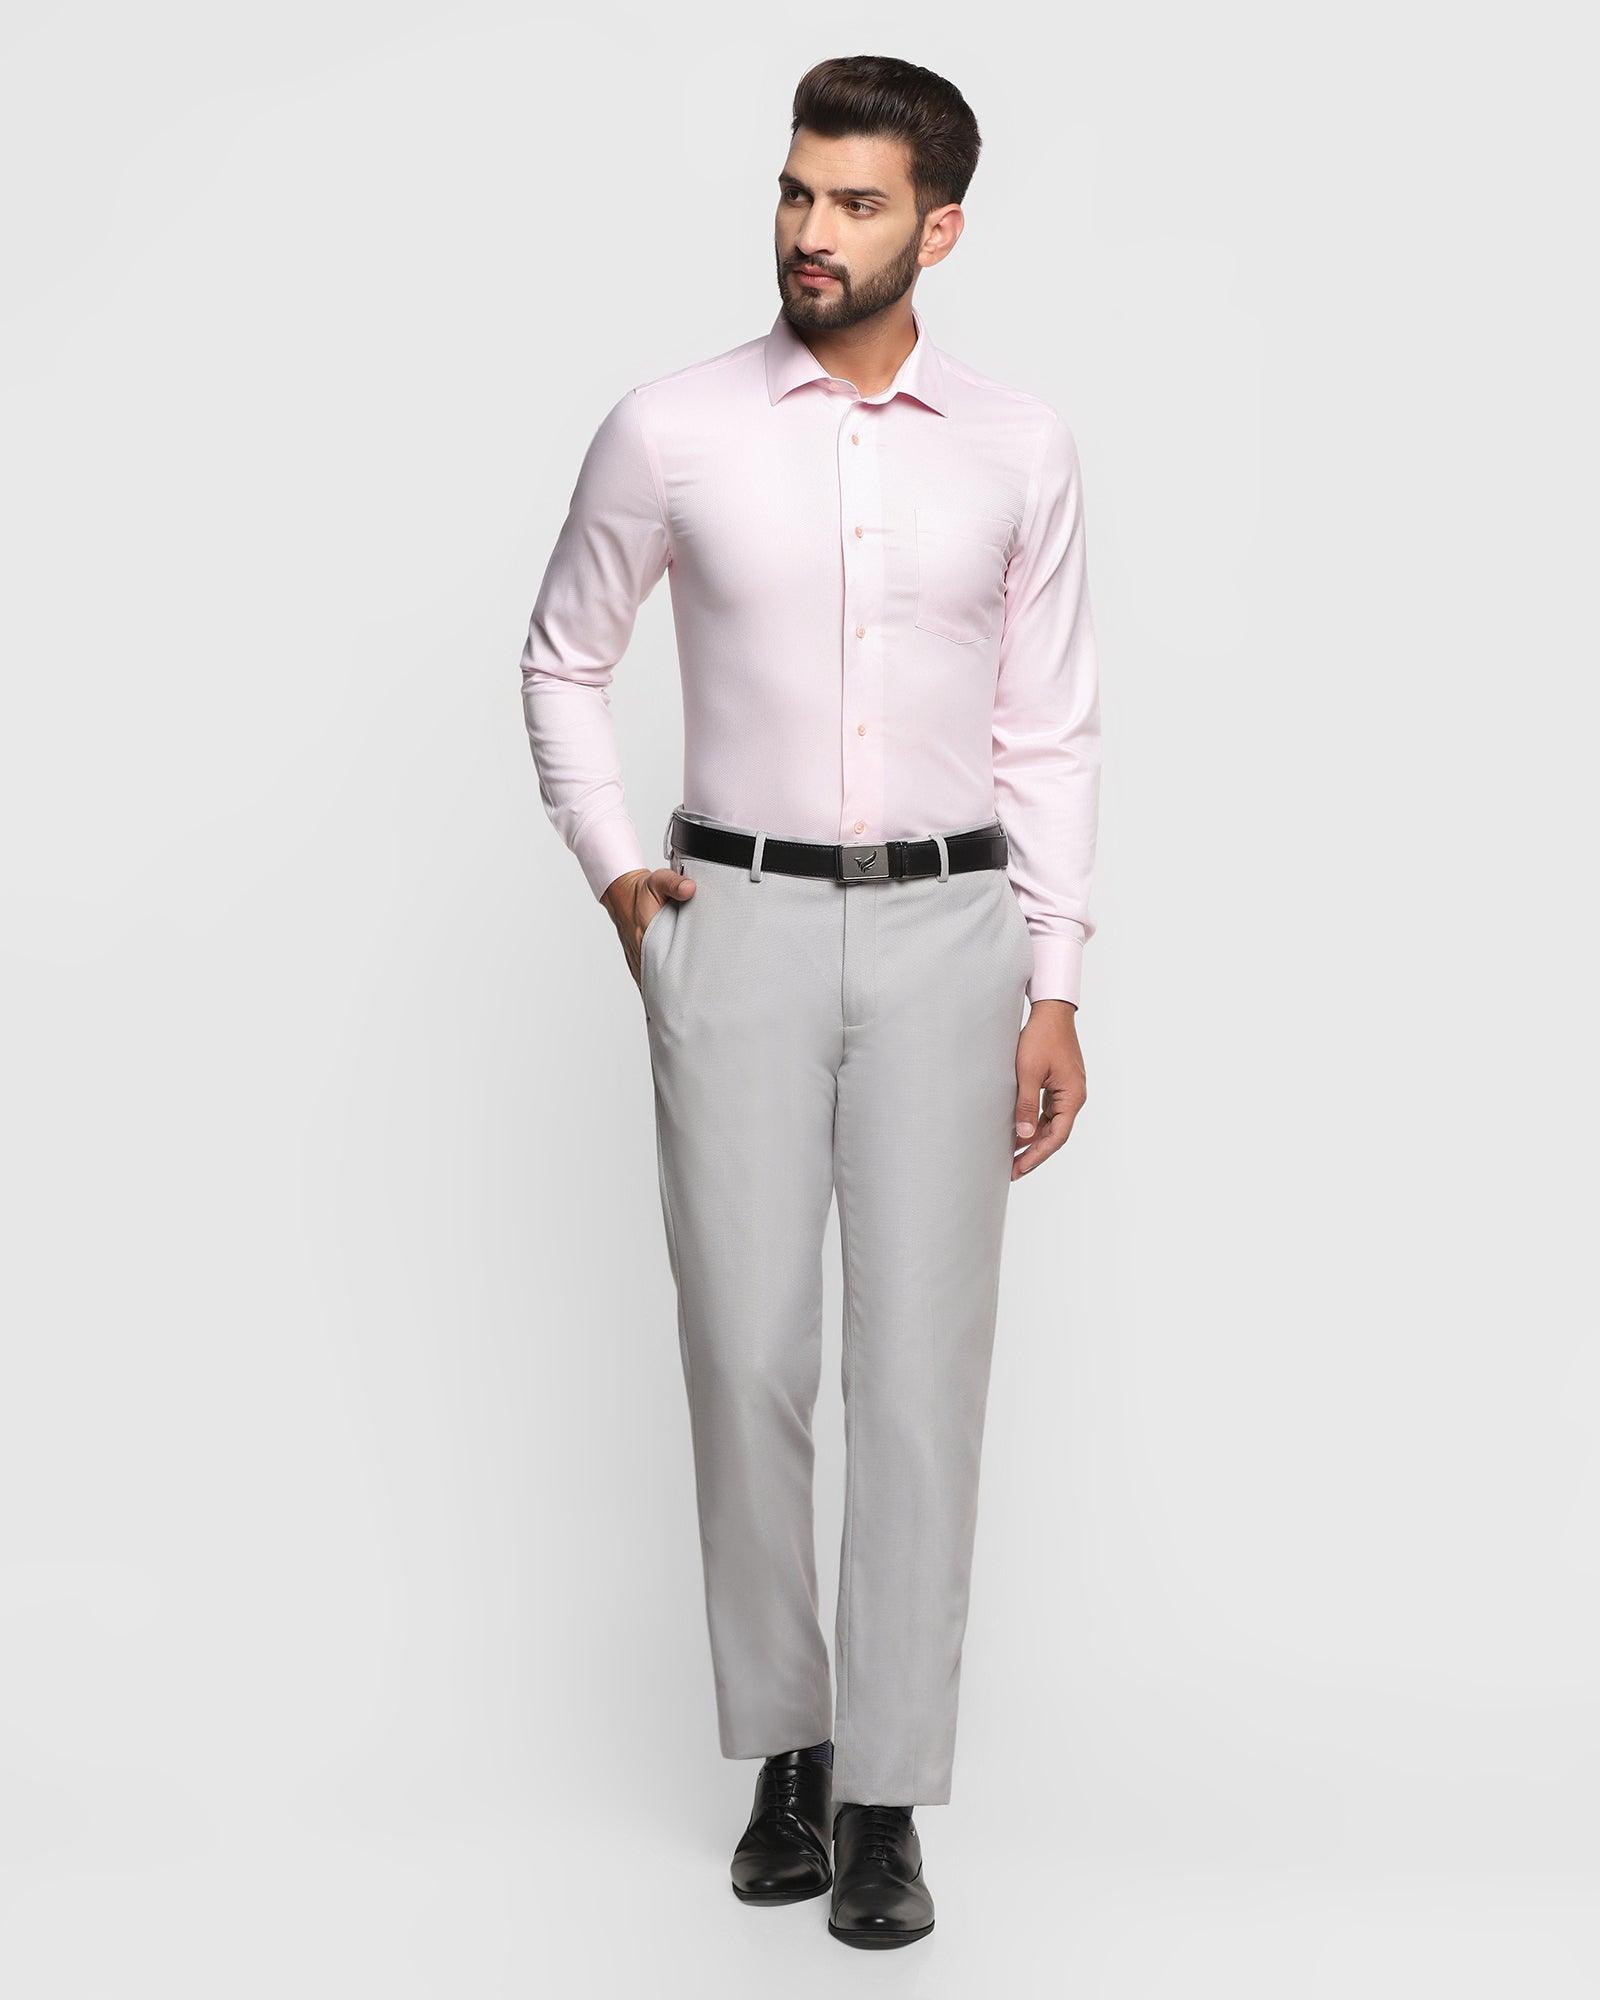 Buy Women Pink Solid Formal Regular Fit Trousers Online  802452  Van  Heusen